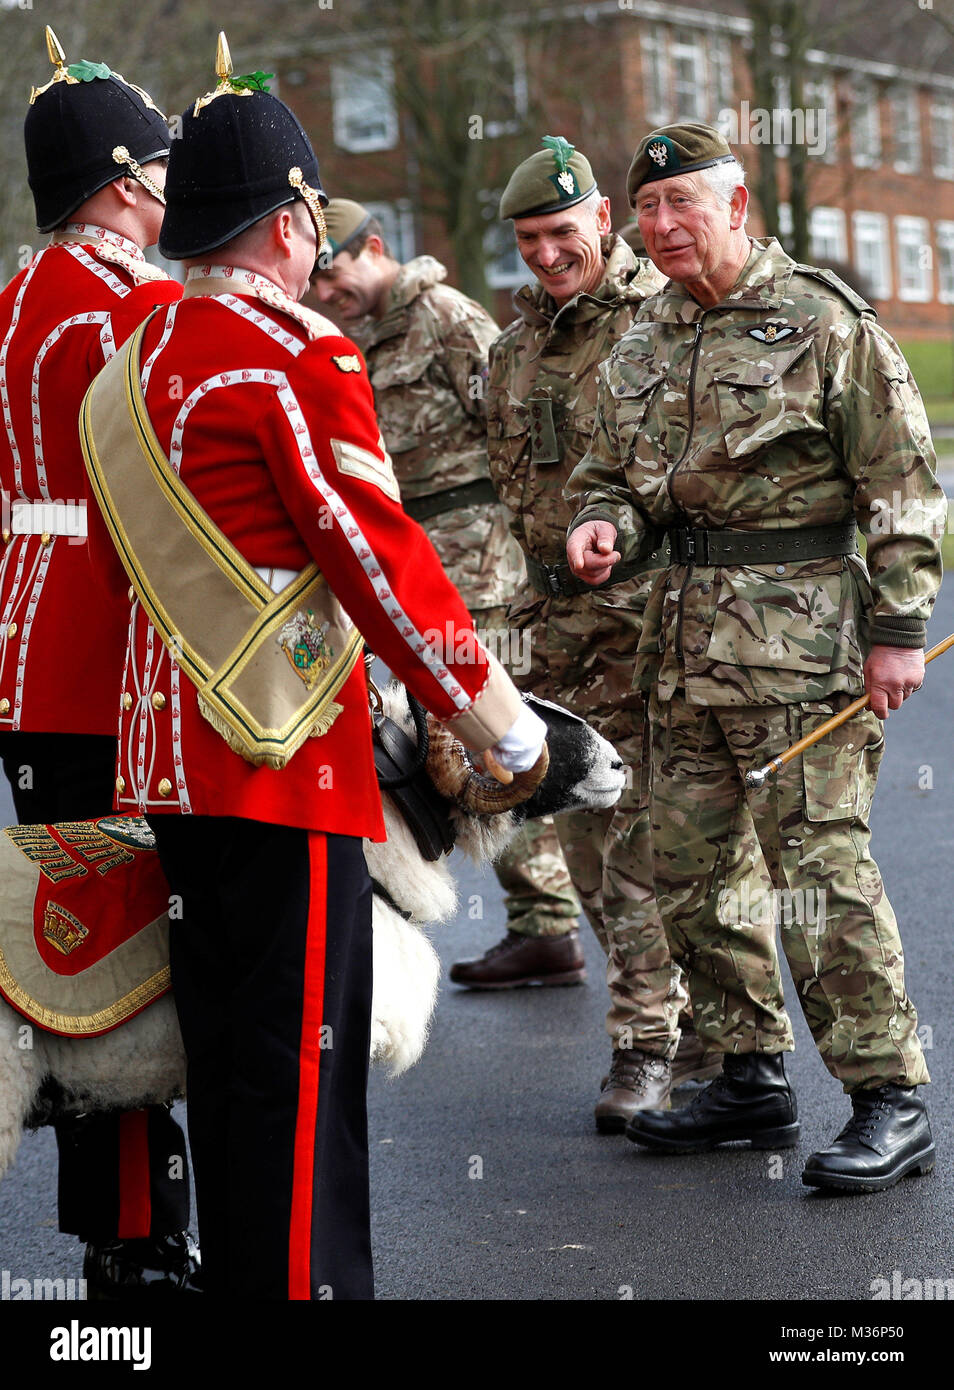 Der Prinz von Wales (rechts) erfüllt Private Derby XXII, eine swaledale Ram und der Regimental Maskottchen bei seinem Besuch der 1.BATAILLON der Mercian Regiment zu 10 Jahre als Oberst und 40 Jahre seit dem Werden Oberst-in-chief des Cheshire Regiment markieren. Stockfoto